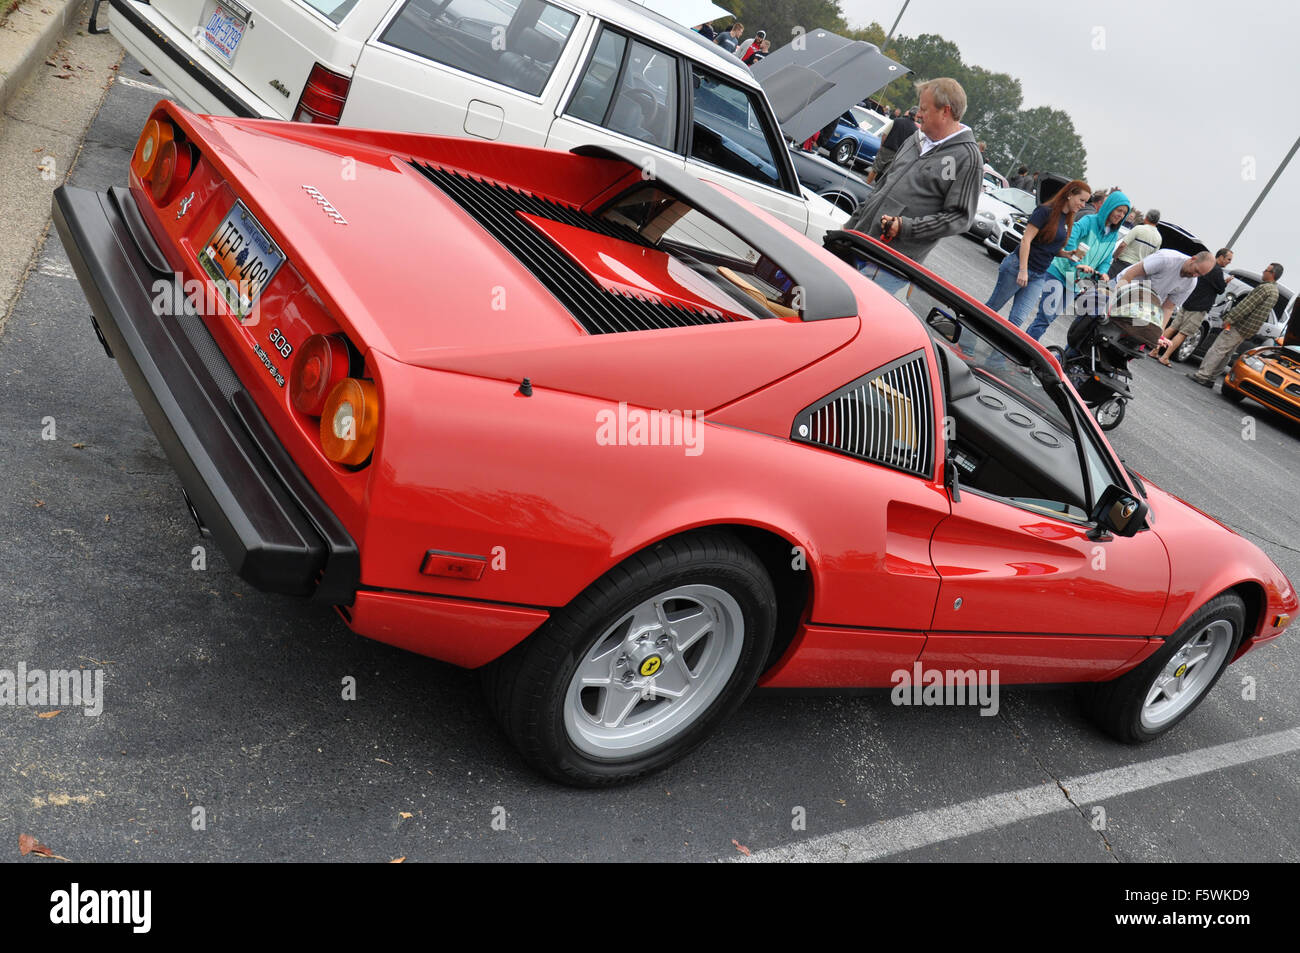 A Red Ferrari sports car at a car show. Stock Photo